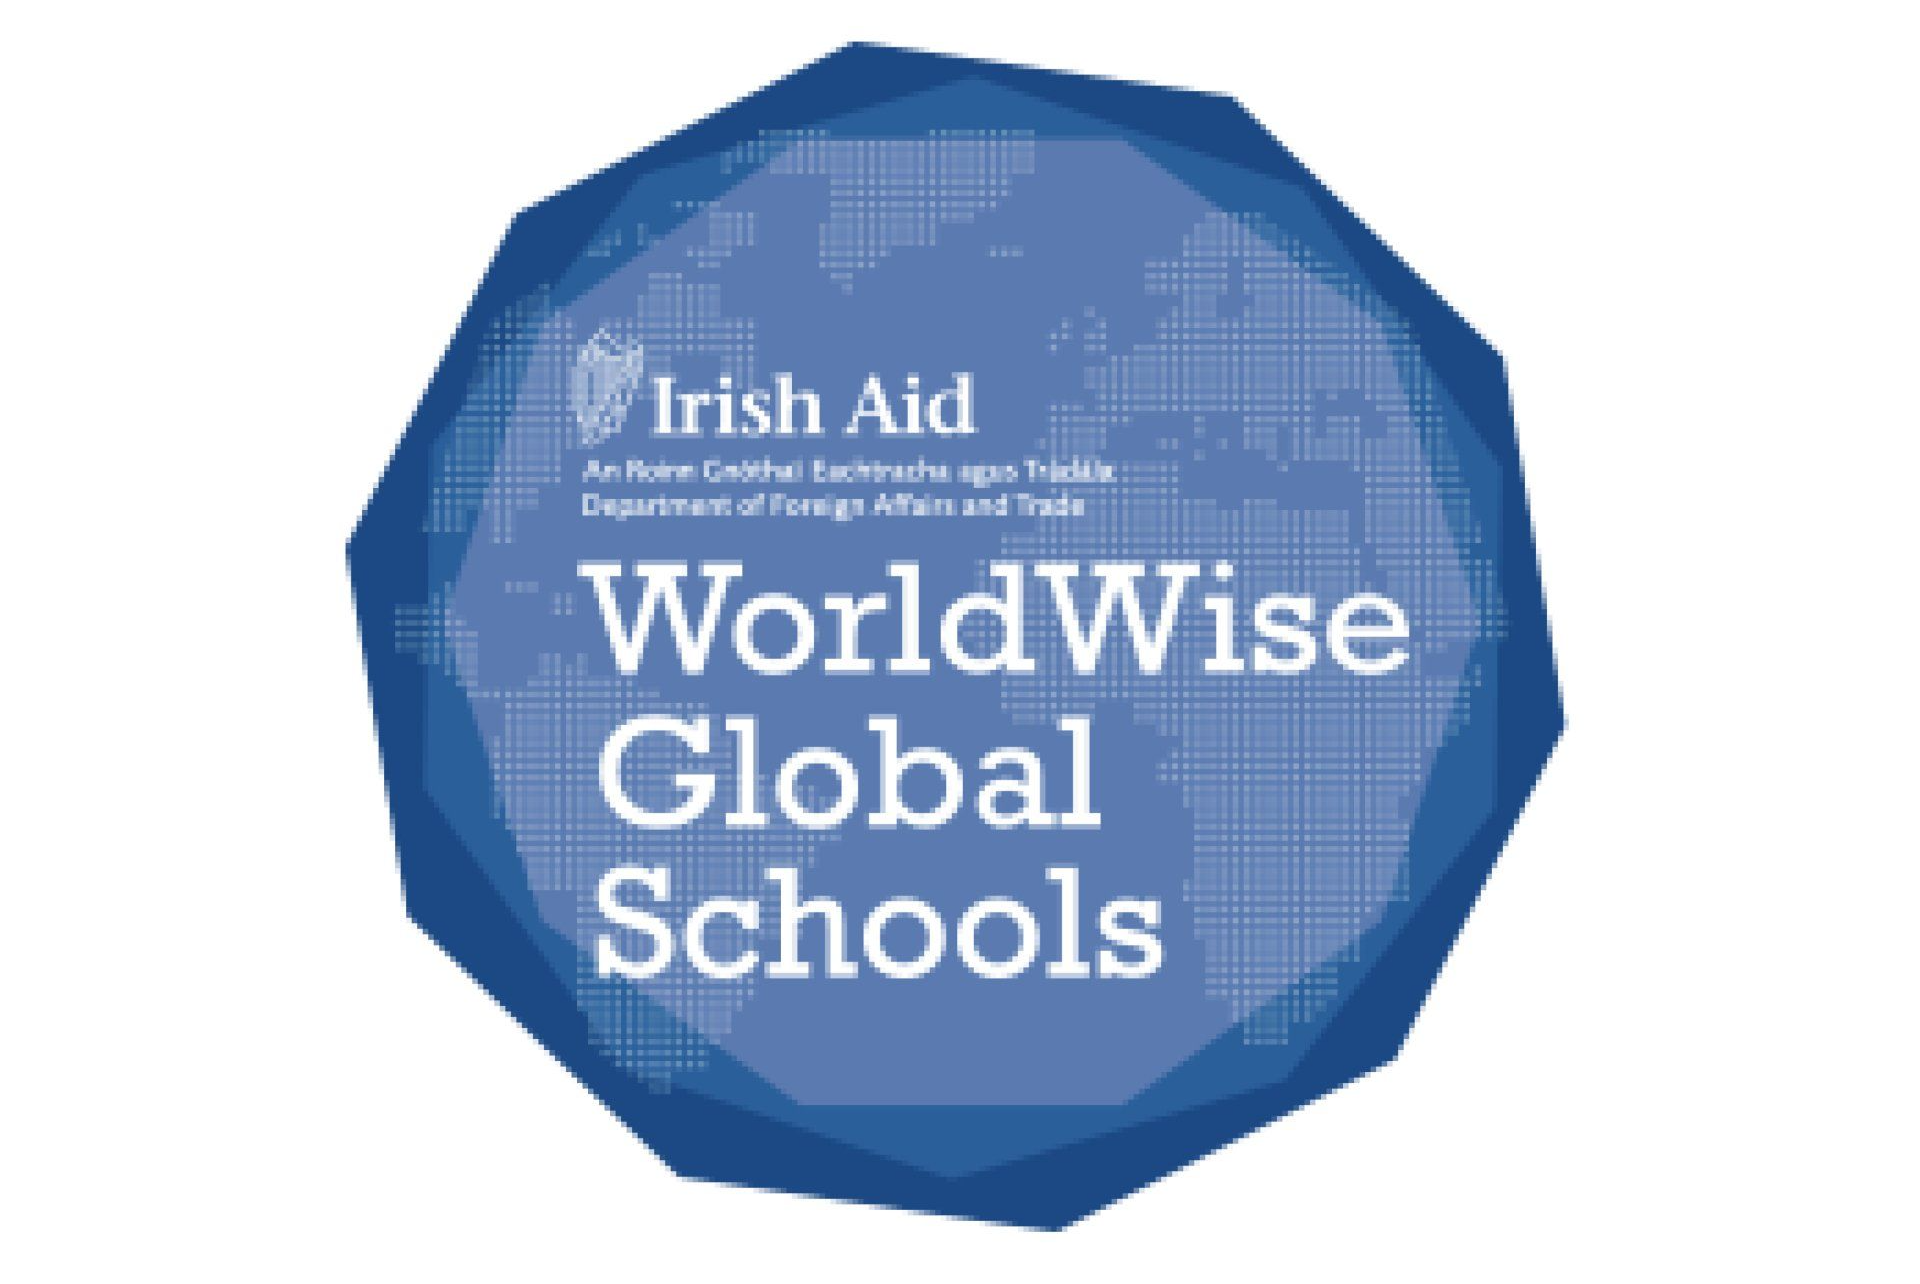 WorldWise Global Schools